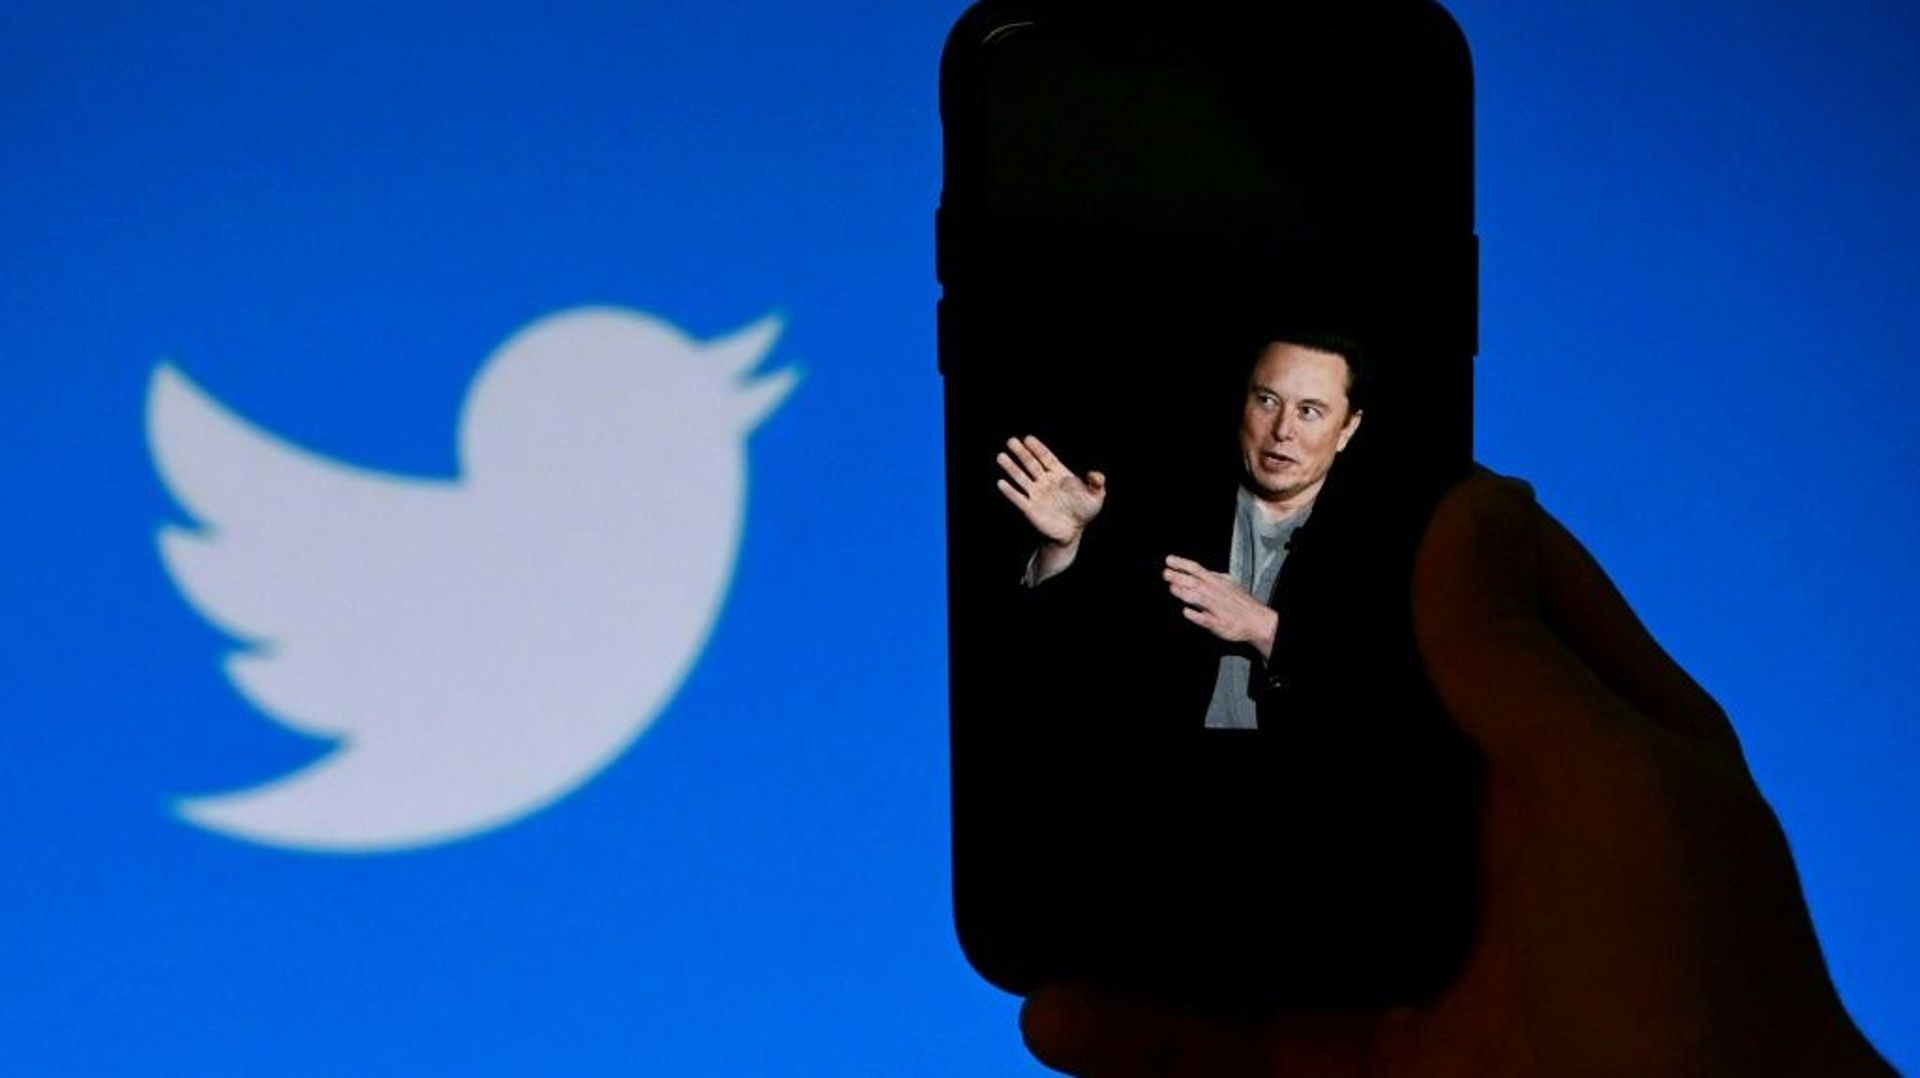 Le nouveau propriétaire de Twitter, Elon Musk, interpellé par le président français Emmanuel Macron, répond que les enfants seraient protégés en ligne